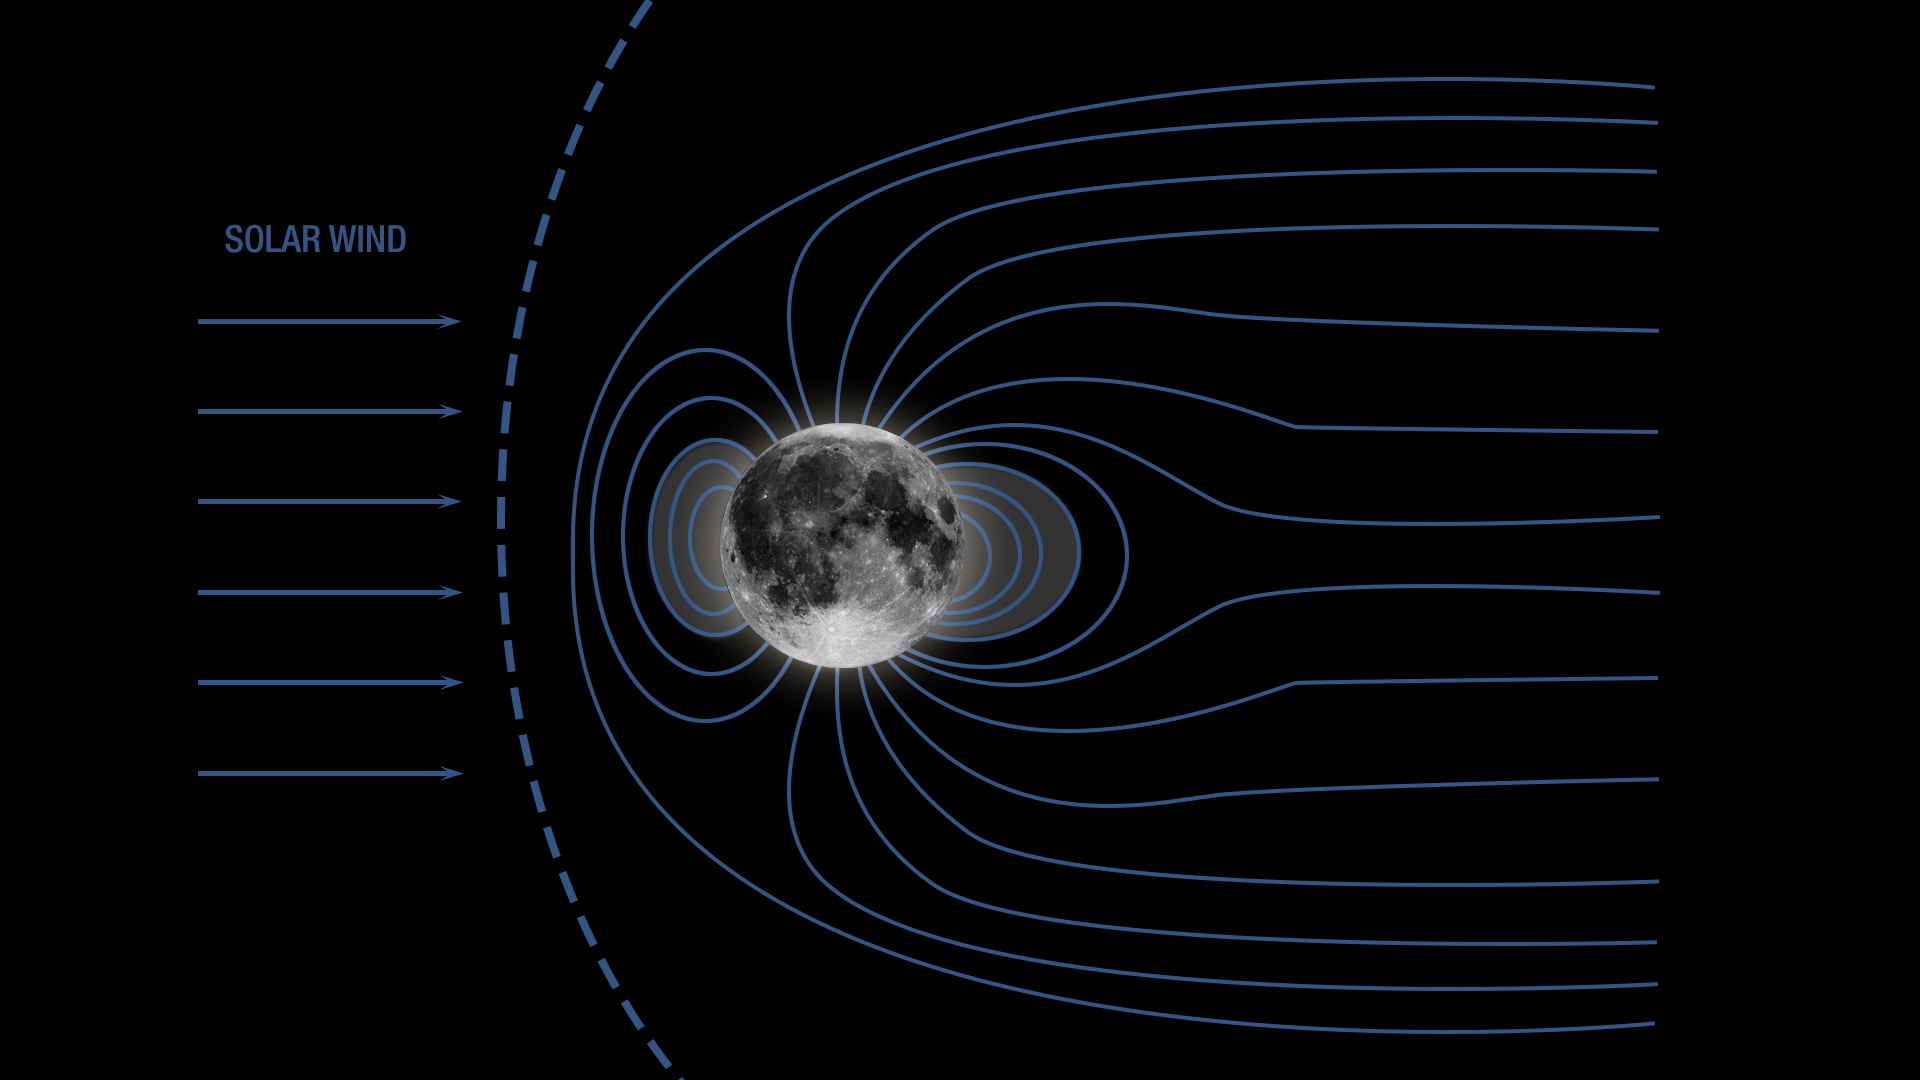 Moon's magnetic field